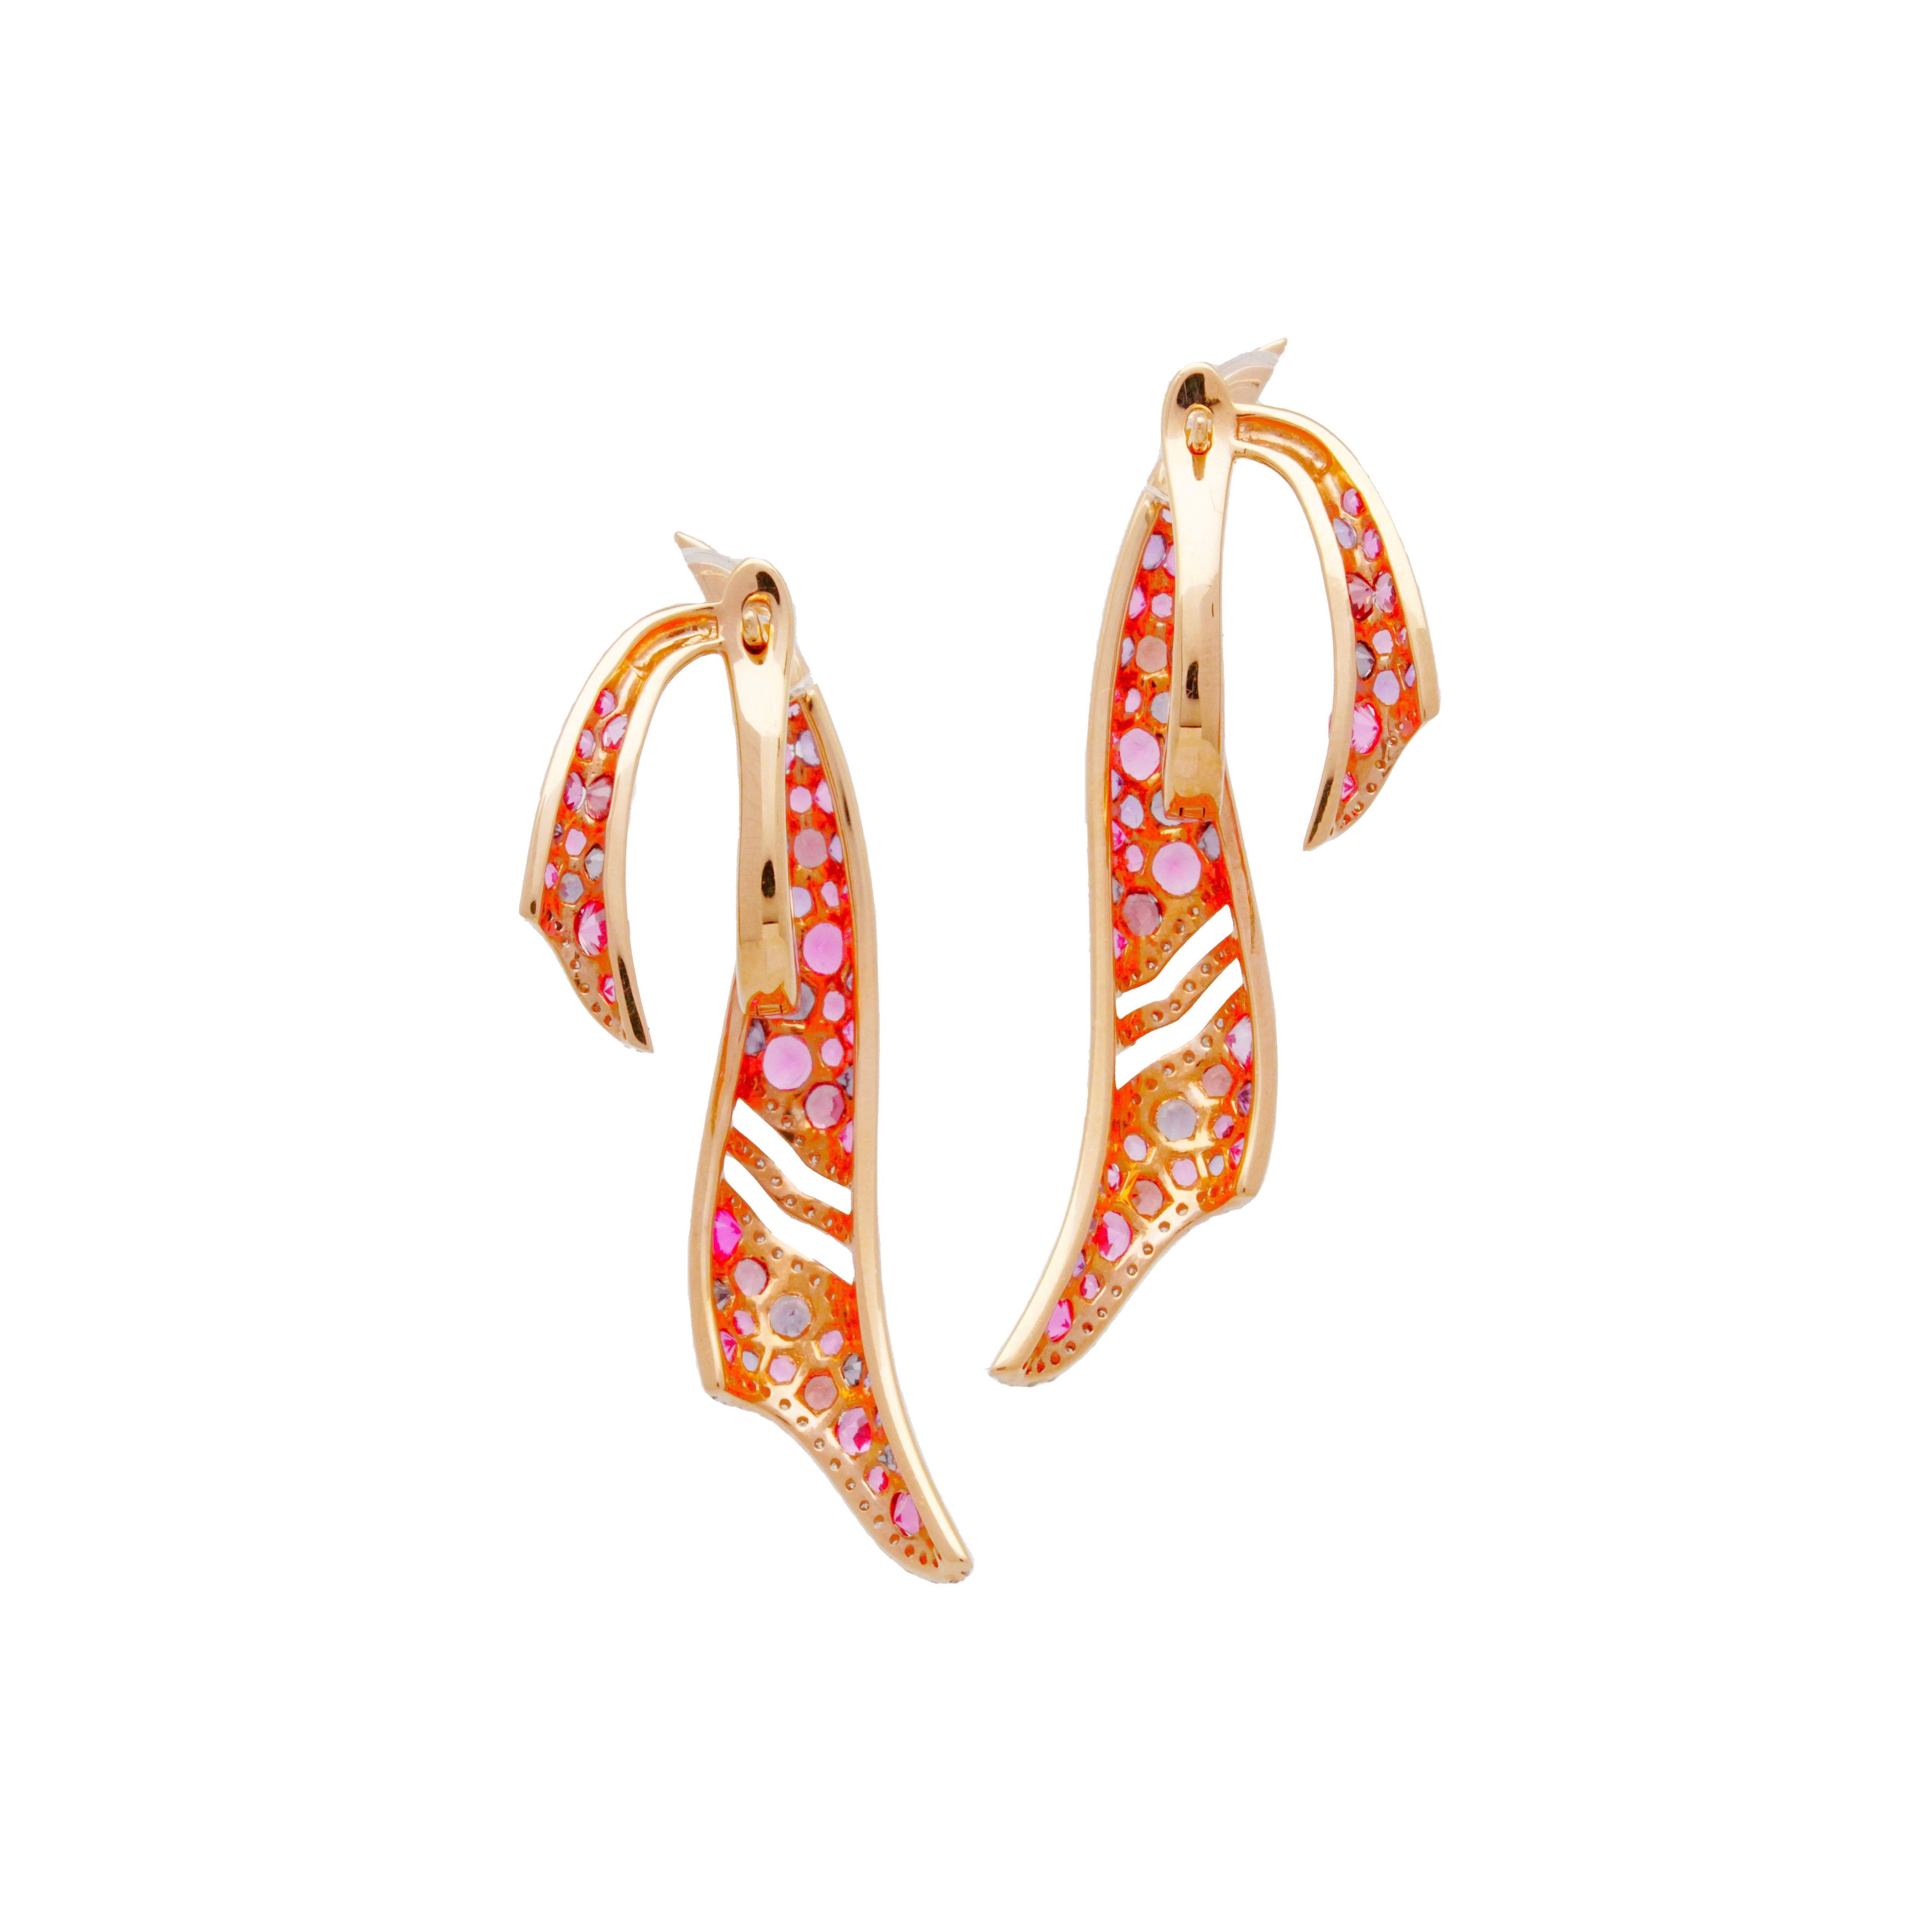 Dieses einzigartige und elegante Paar Ohrringe besteht aus einer Kombination von Amethysten, rosa Spinellen und weißen Diamanten. Durch die Anordnung der Edelsteine entsteht ein schmaler Übergang von einer Farbe zur anderen. Austy ist so